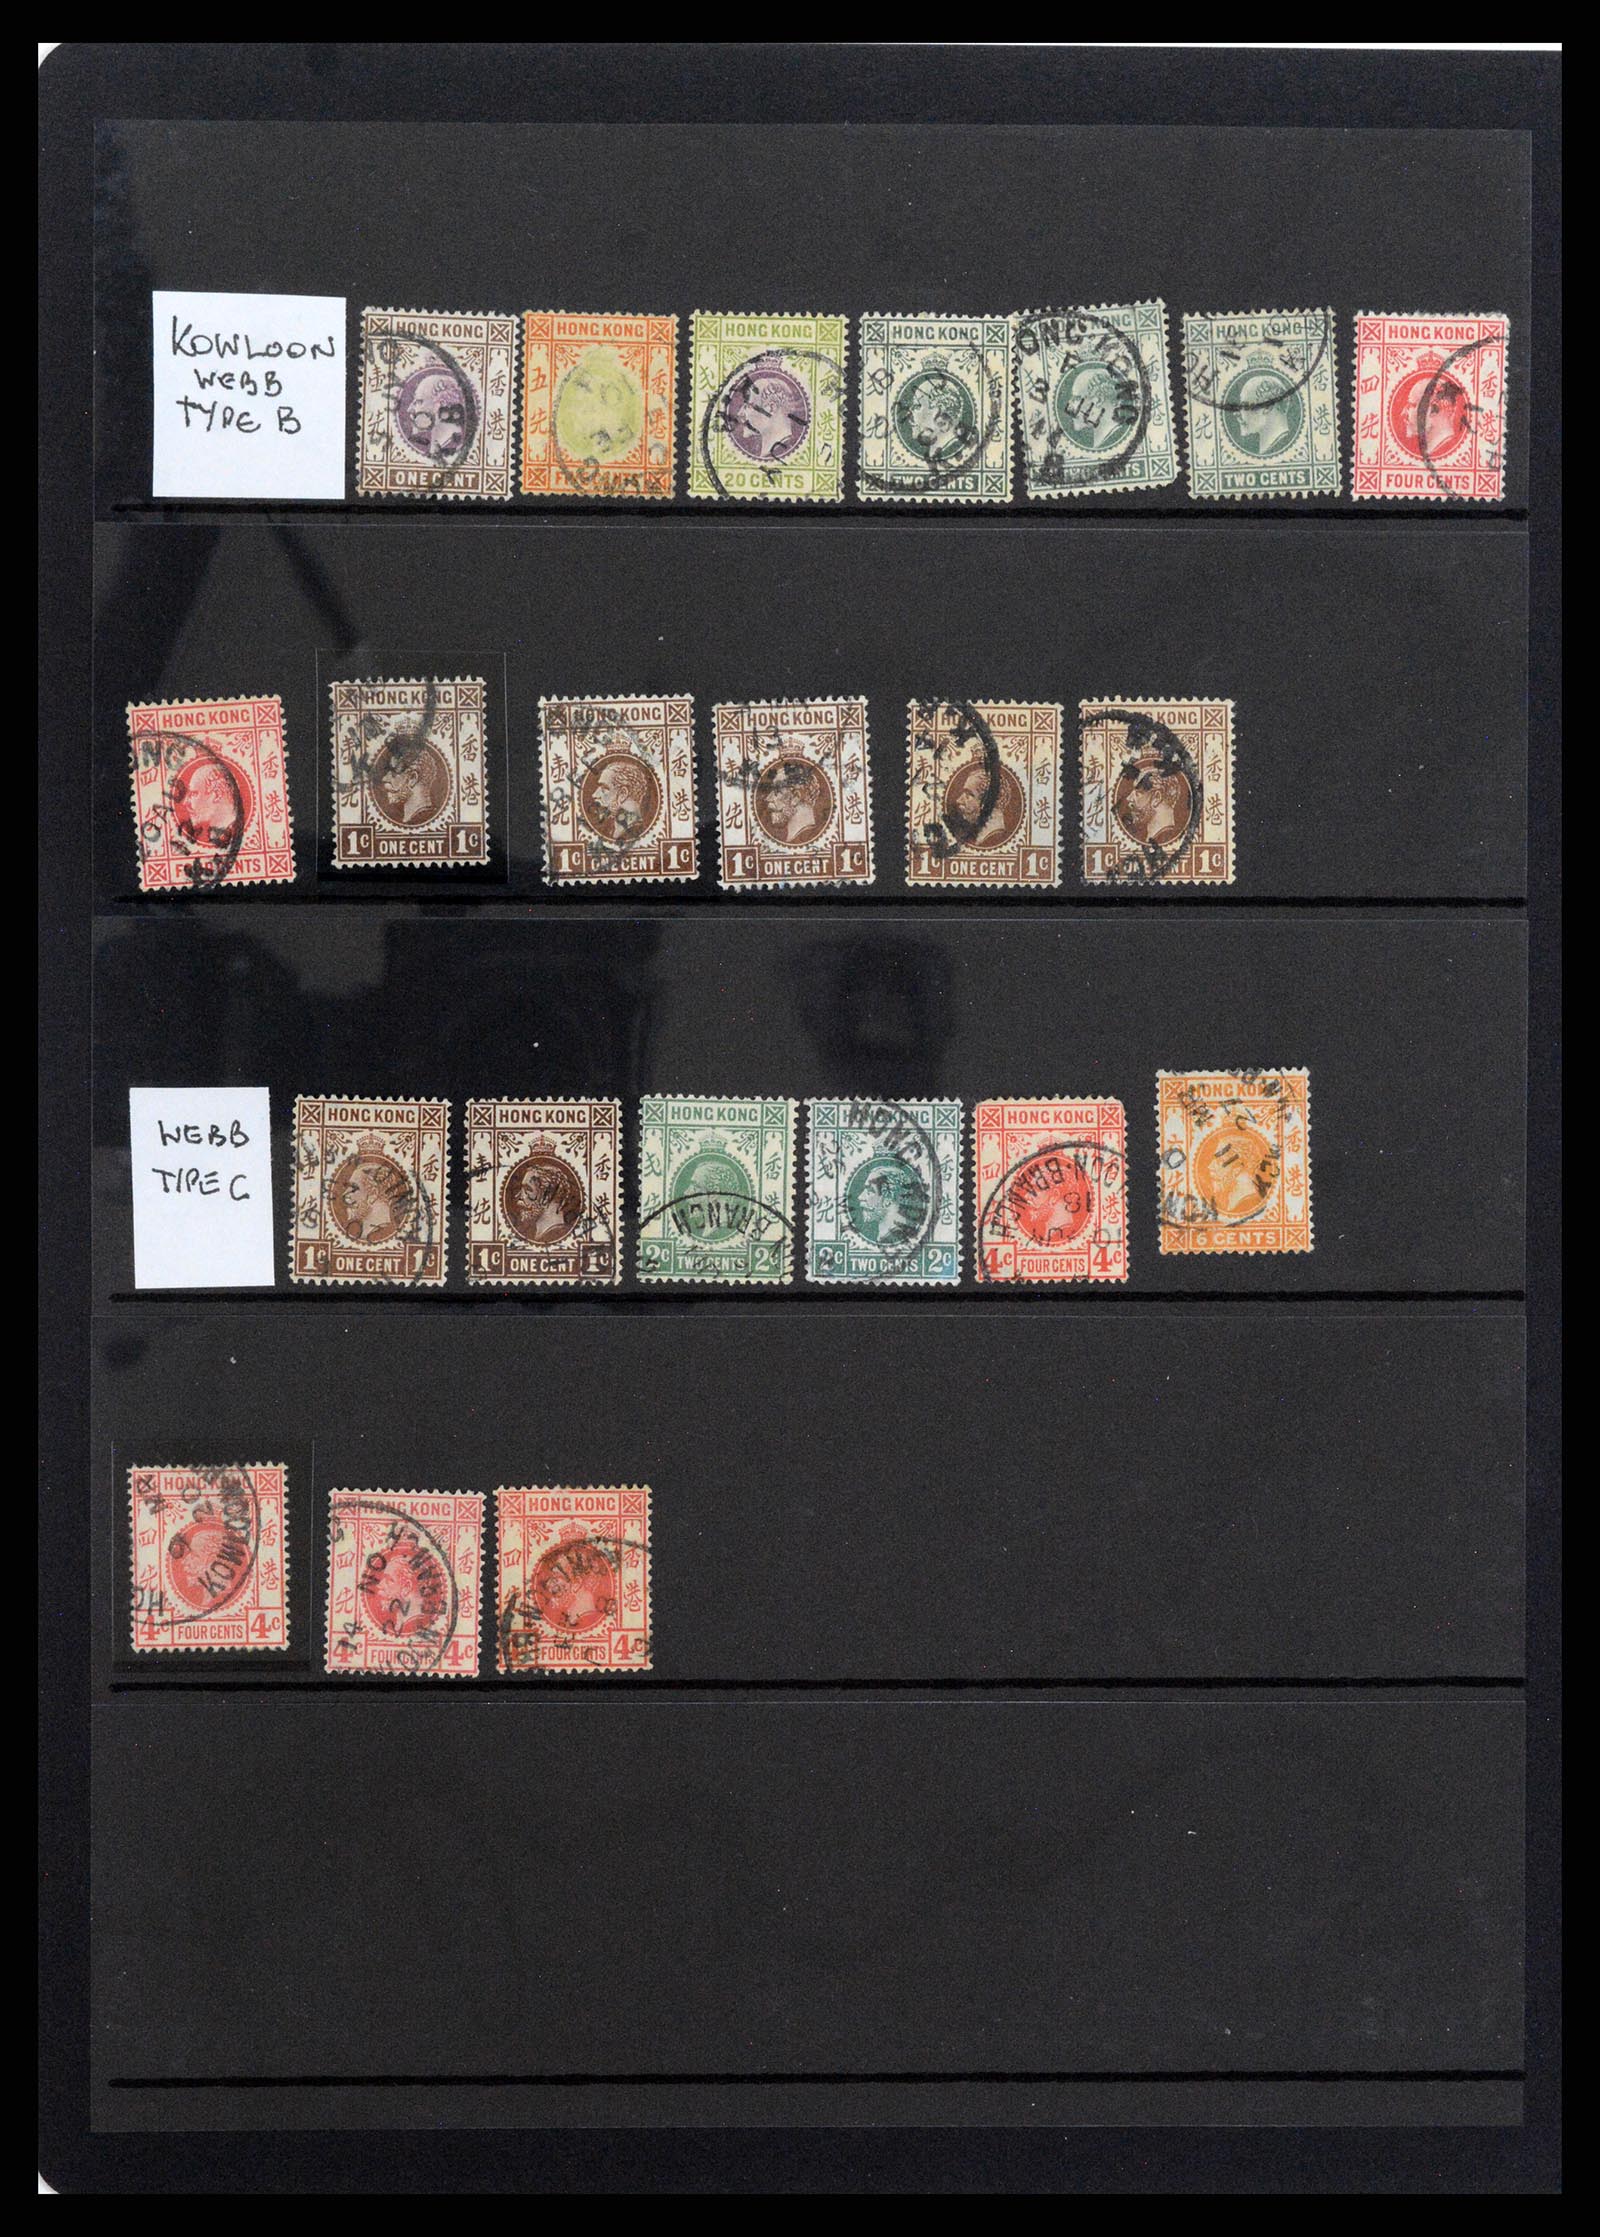 37358 063 - Stamp collection 37358 Hong Kong 1861-1997.